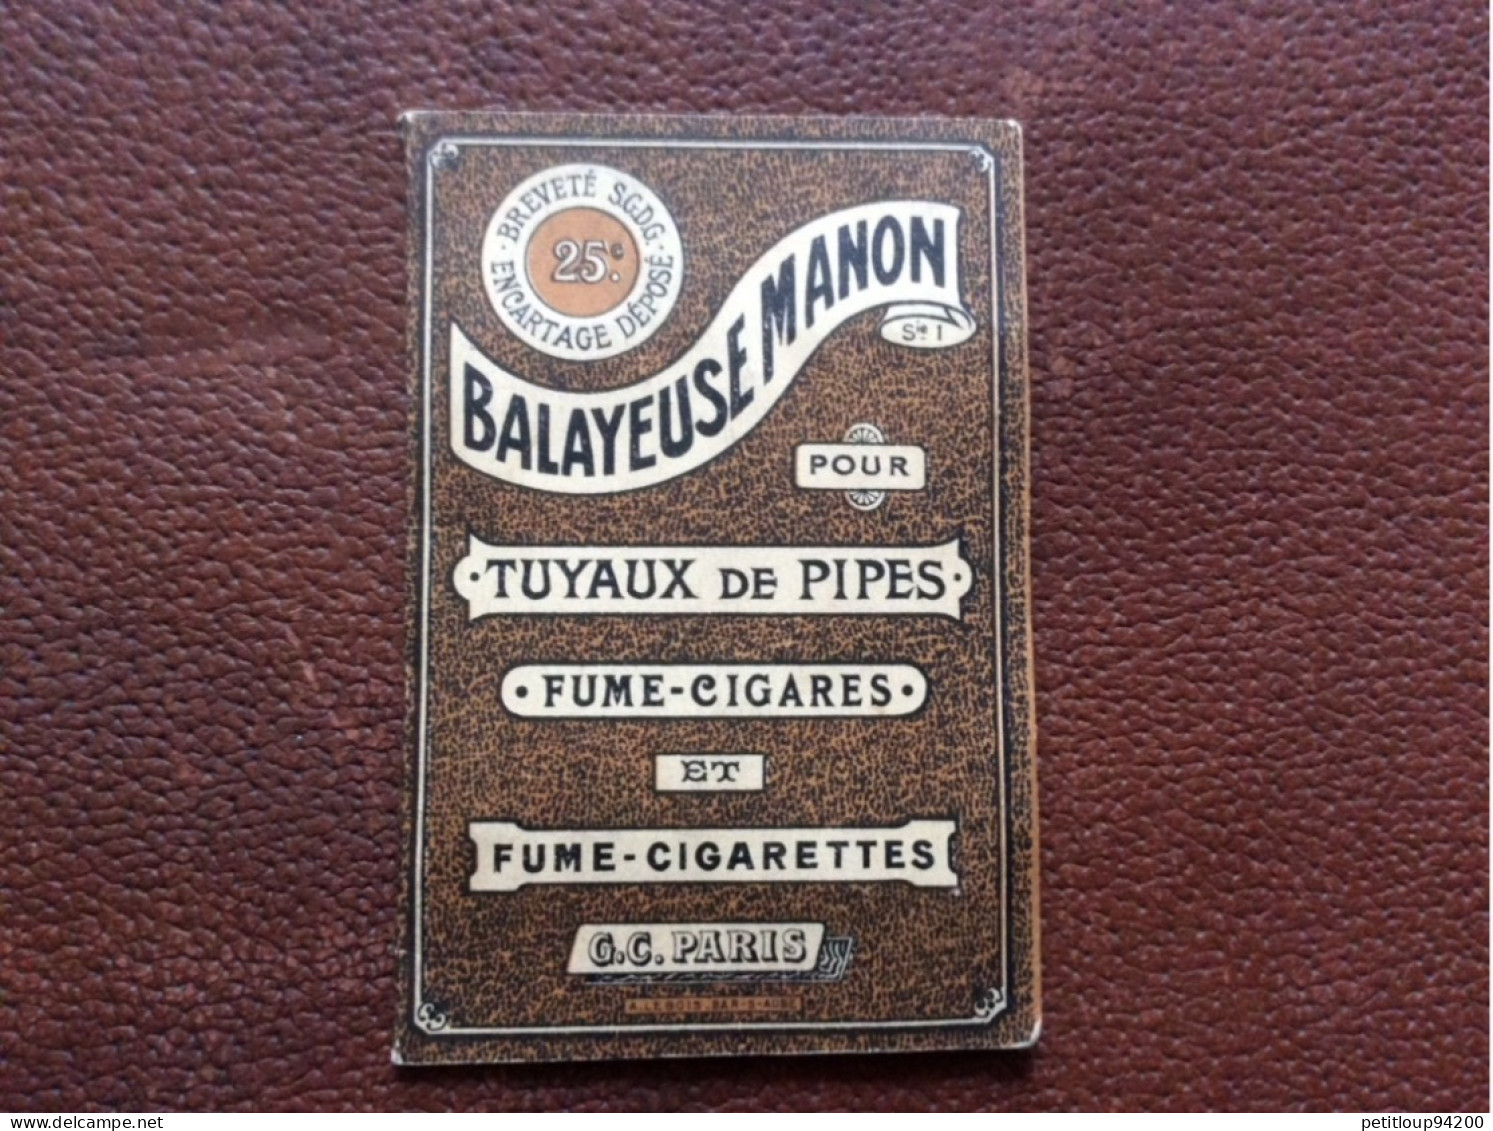 BALAYEUSE MANON  Tuyaux De Pipes  Fume-Cigares  Fume-Cigarettes  G.C  Paris  A.LEBOIS  Bar-s-Aube - Sin Clasificación